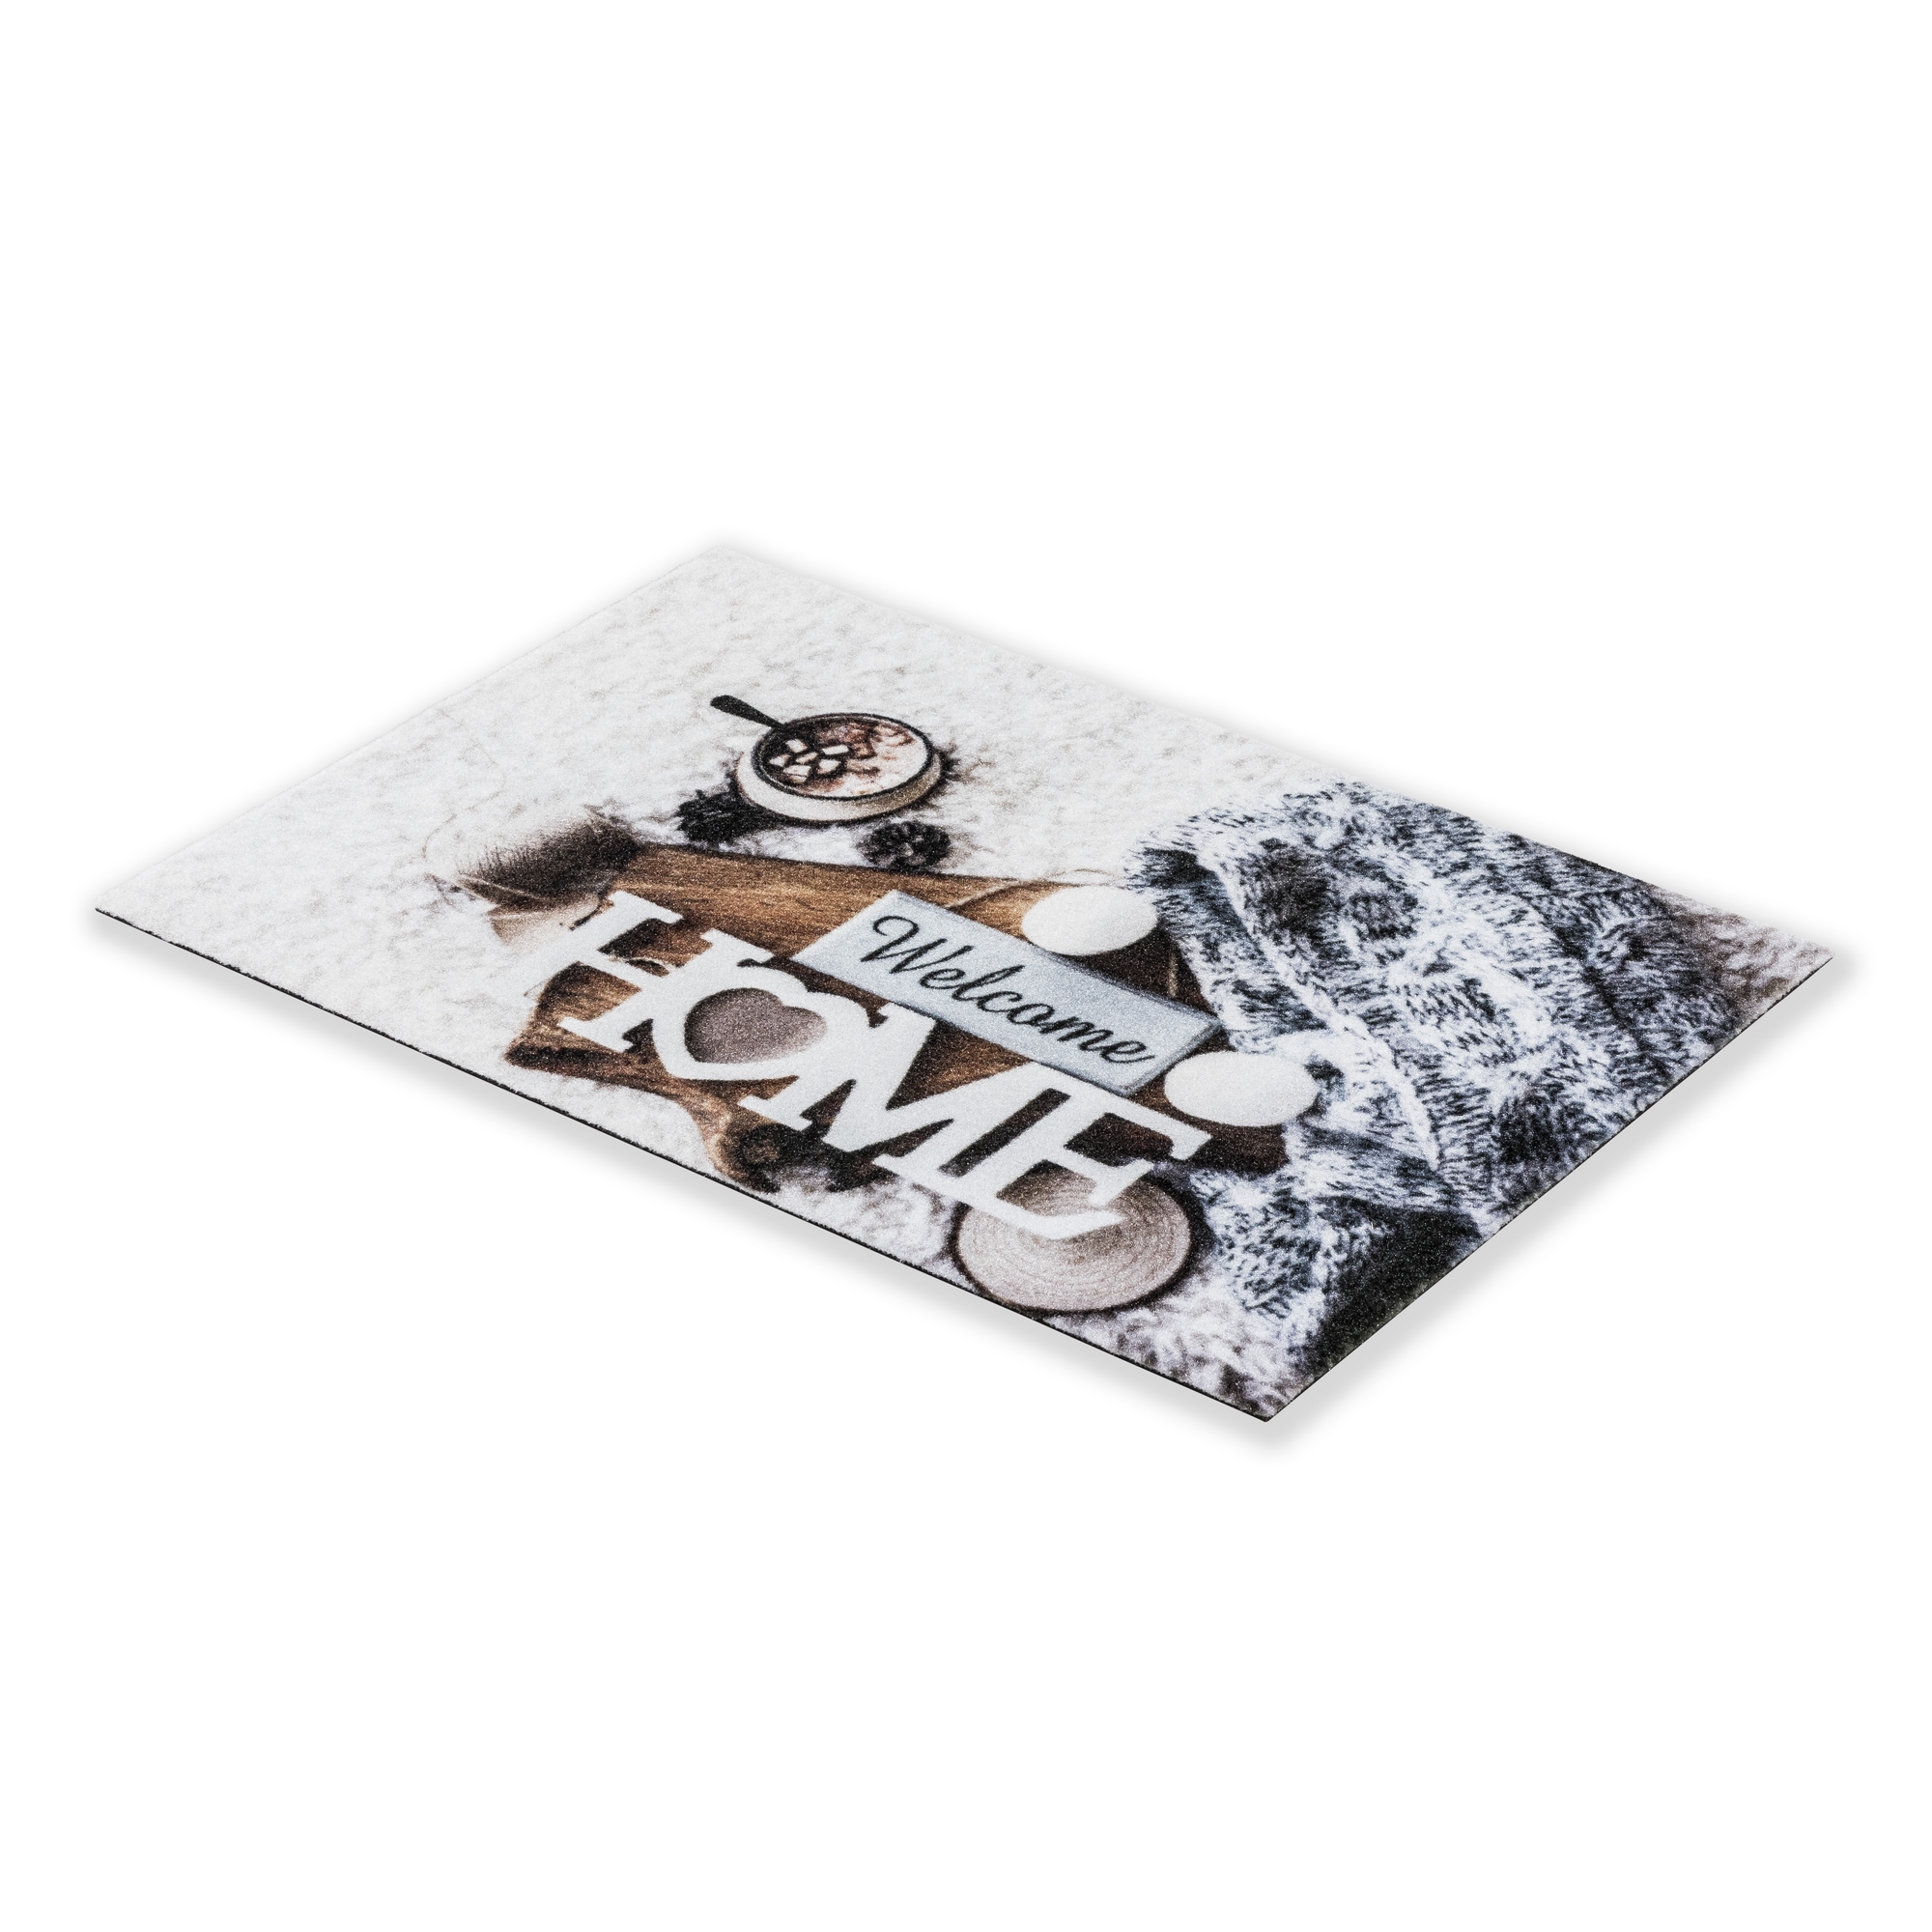 Sauberlaufmatte 'Deco Print' 40 x 60 cm Winter Welcome grau + product picture